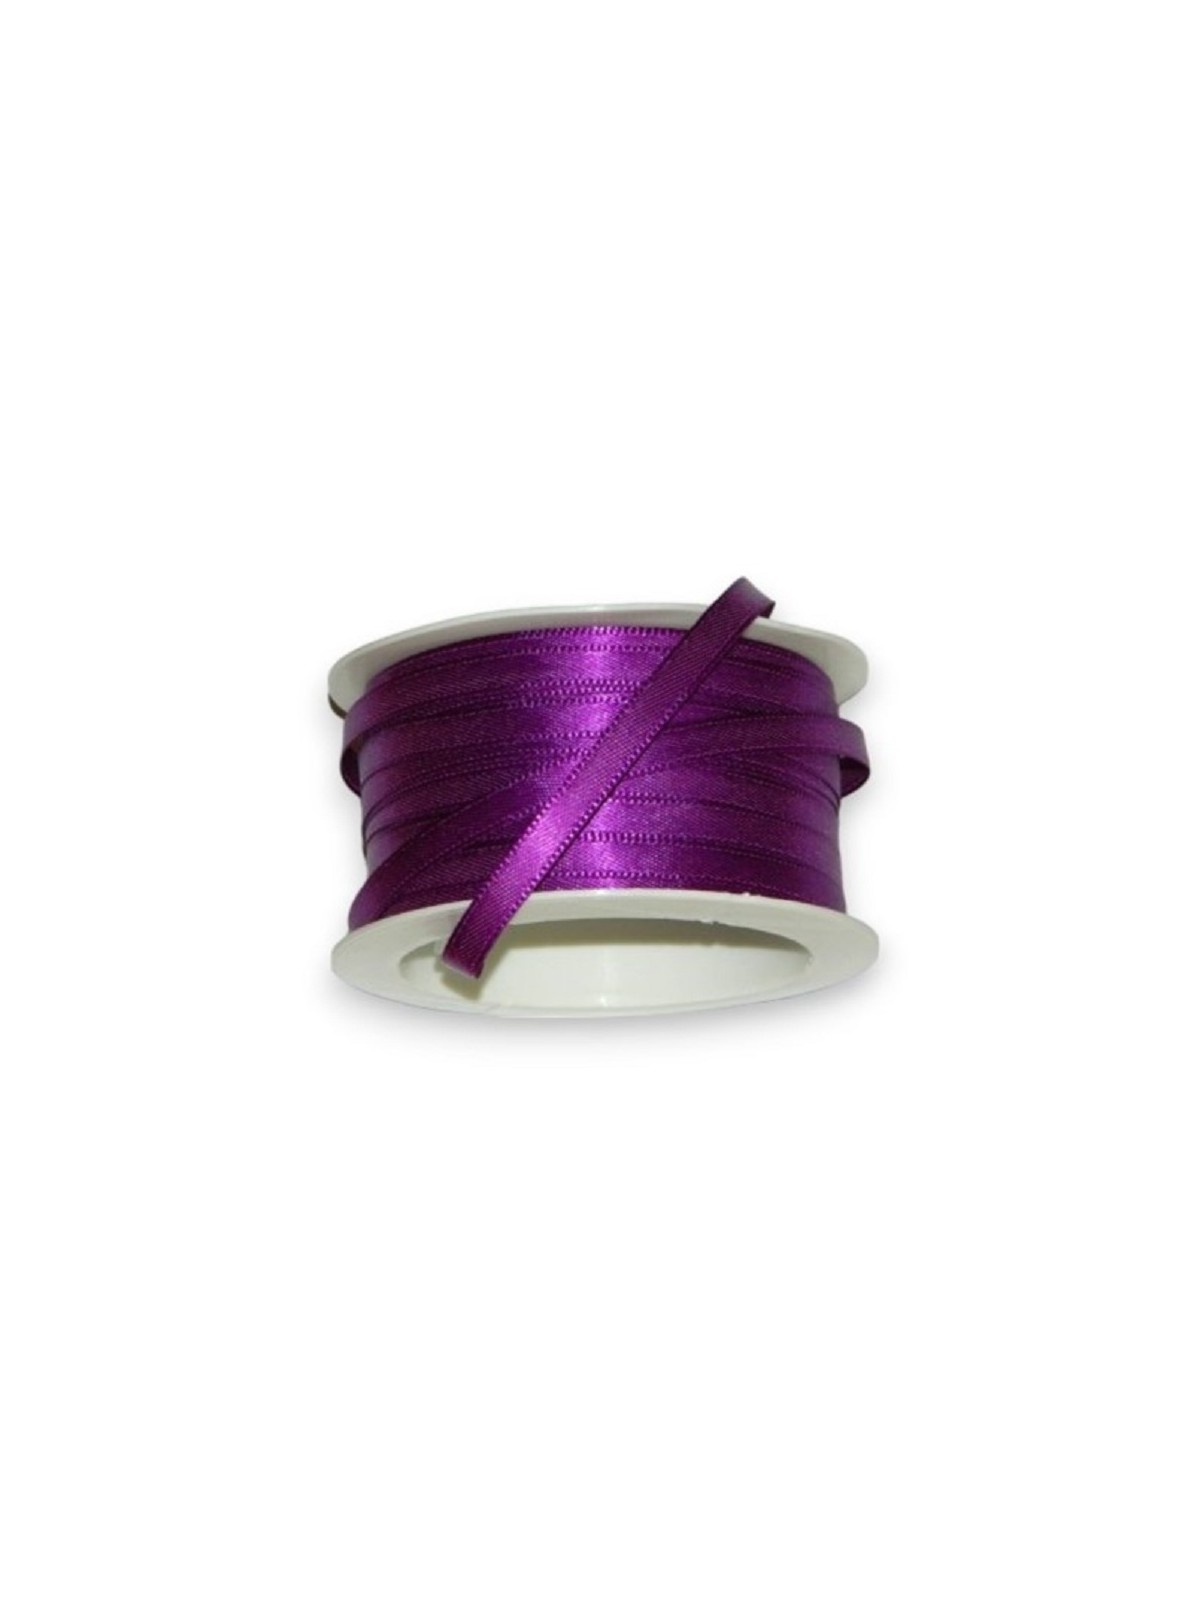 Satin ribbon - purple 50m / 5 mm